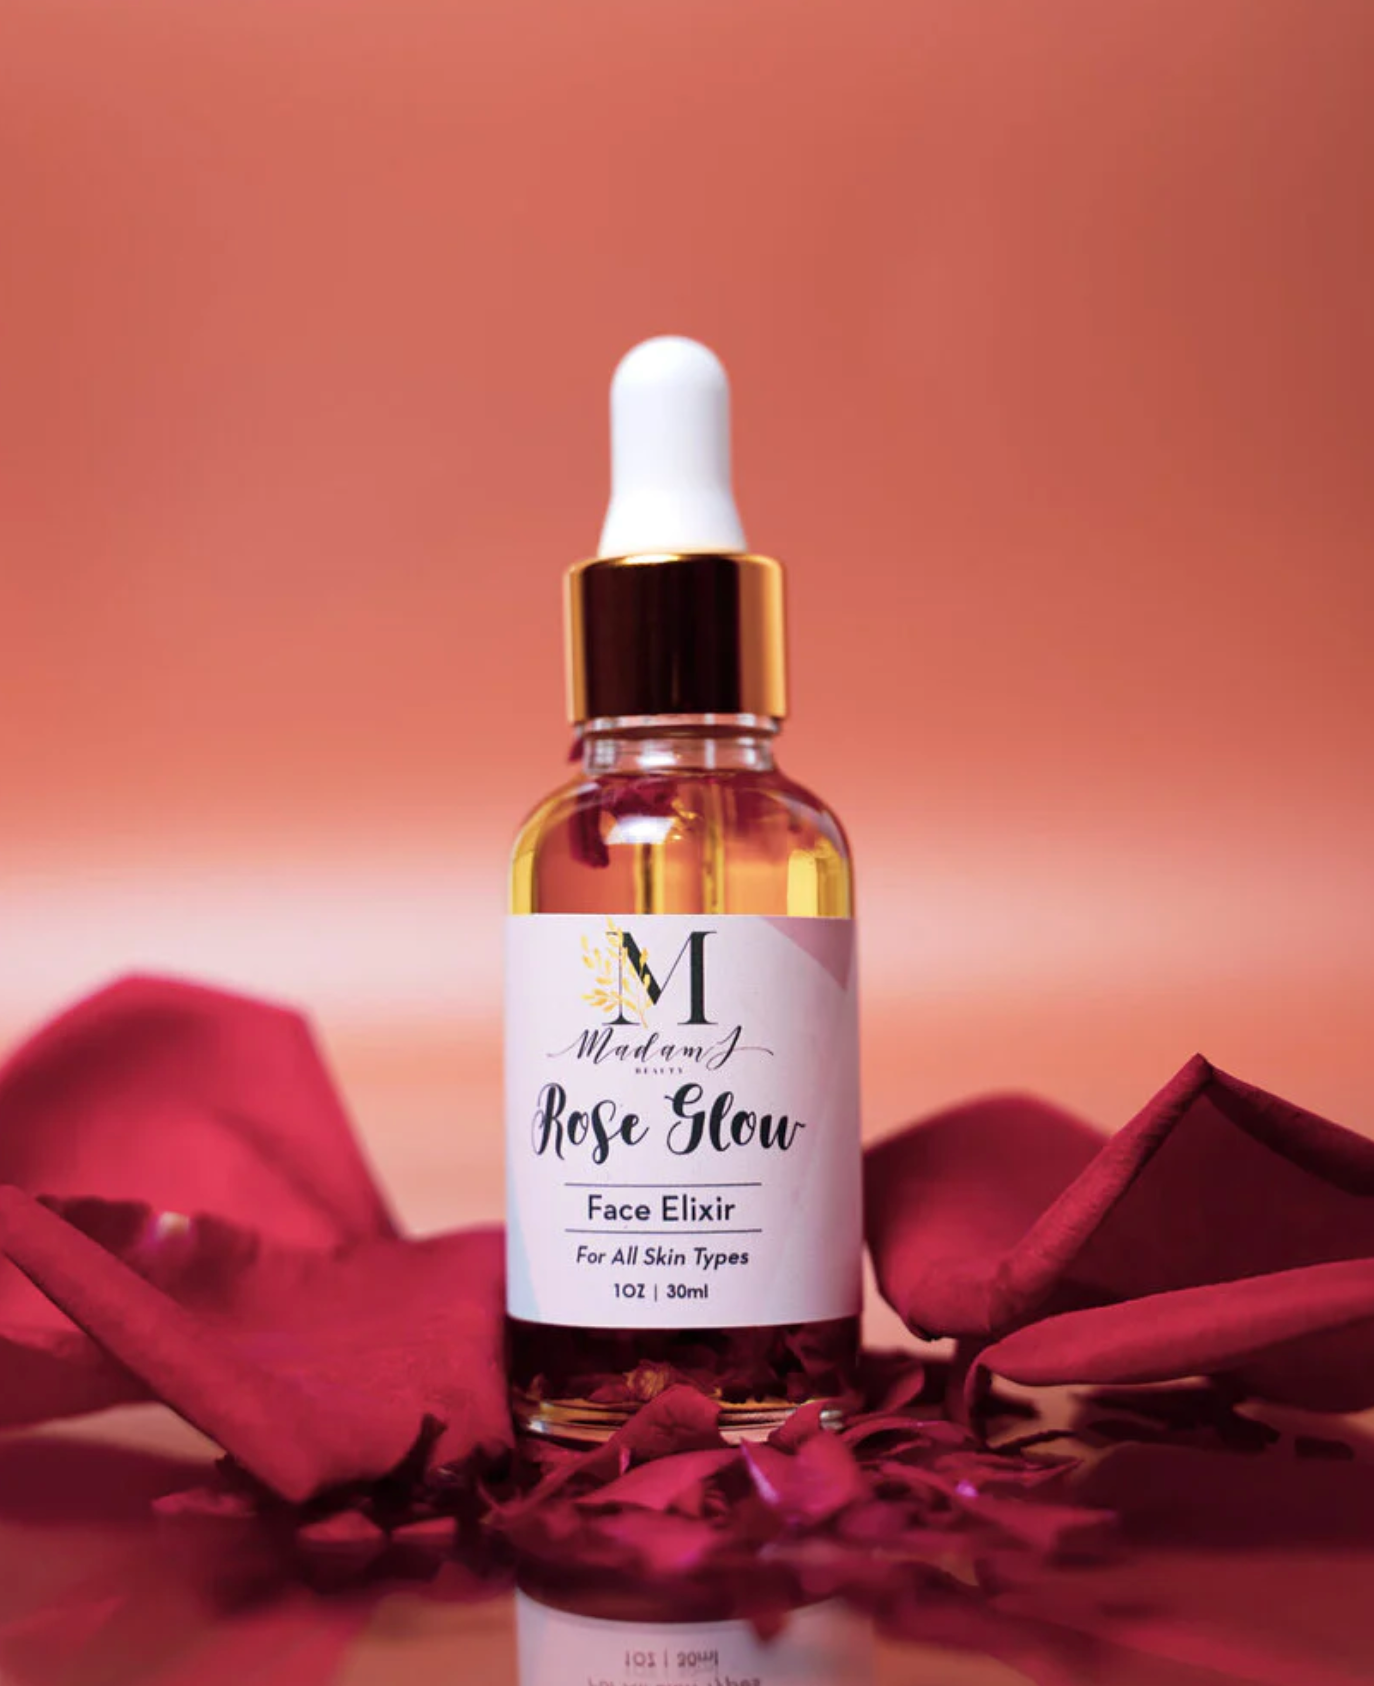 Rose Glow Face Elixir in dropper bottle made by Madam J Beauty